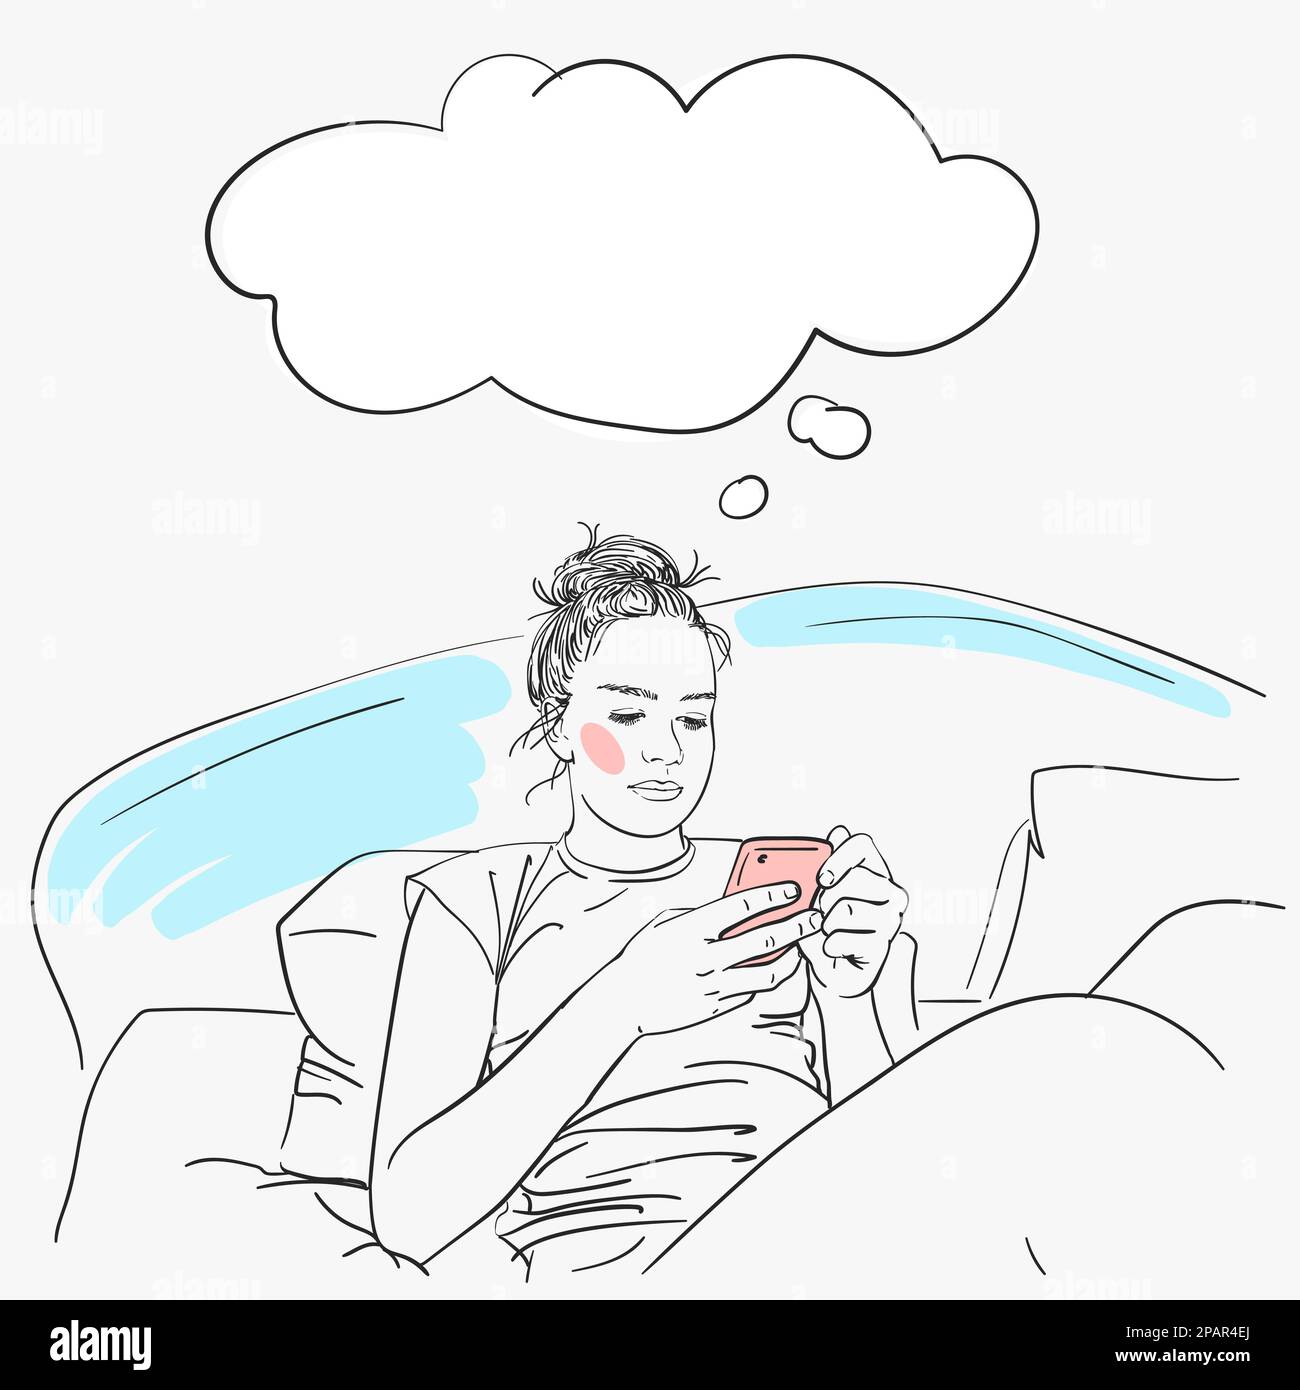 Das Mädchen sitzt mit dem Smartphone im Bett und träumt, die Gedanken blasen sich über den Kopf. Vektorskizze, handgezeichnete Illustration Stock Vektor